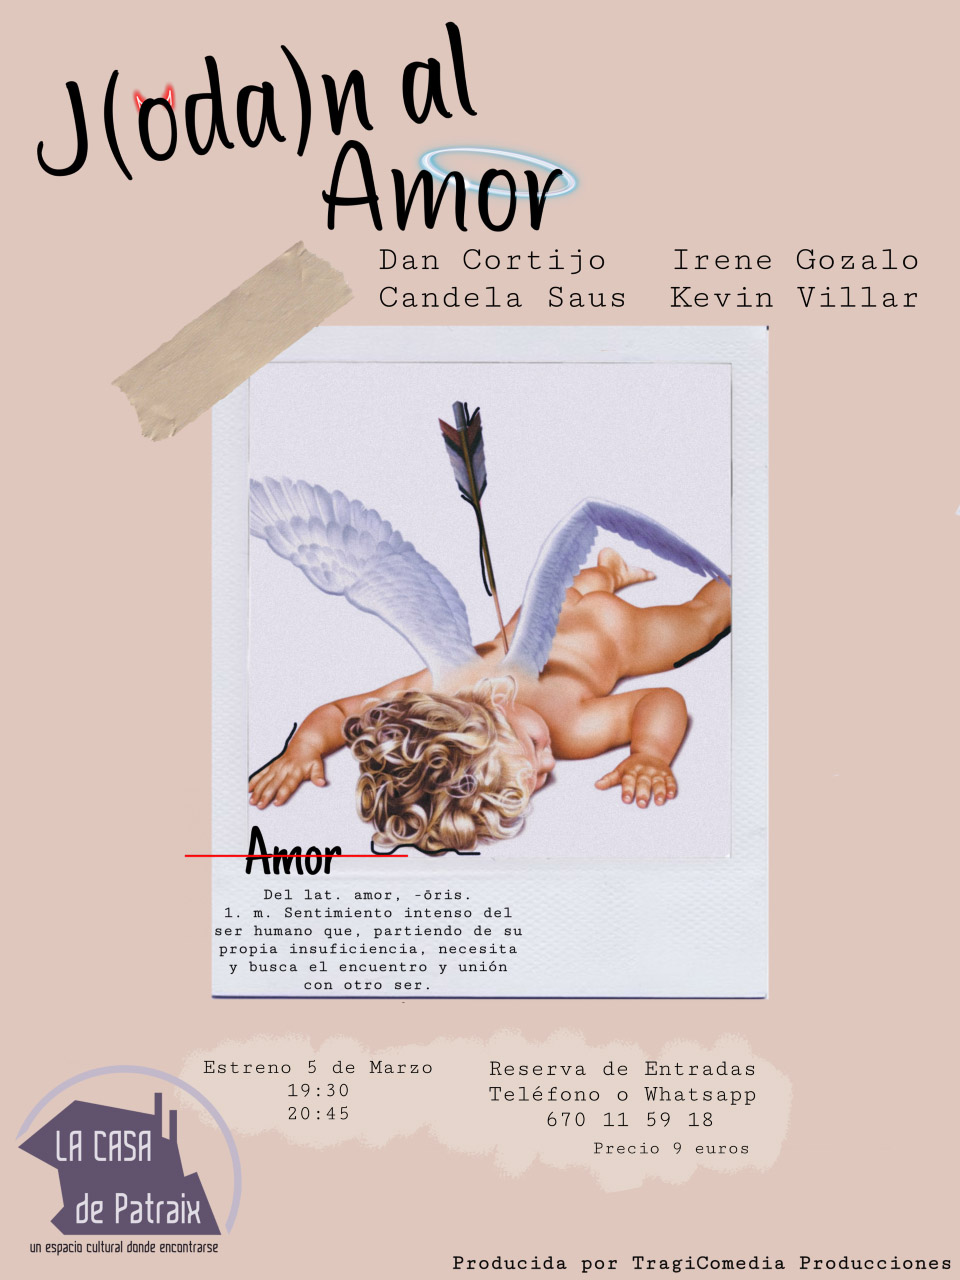 Tragicomedia Producciones presenta el estreno de “J(oda)n al Amor”